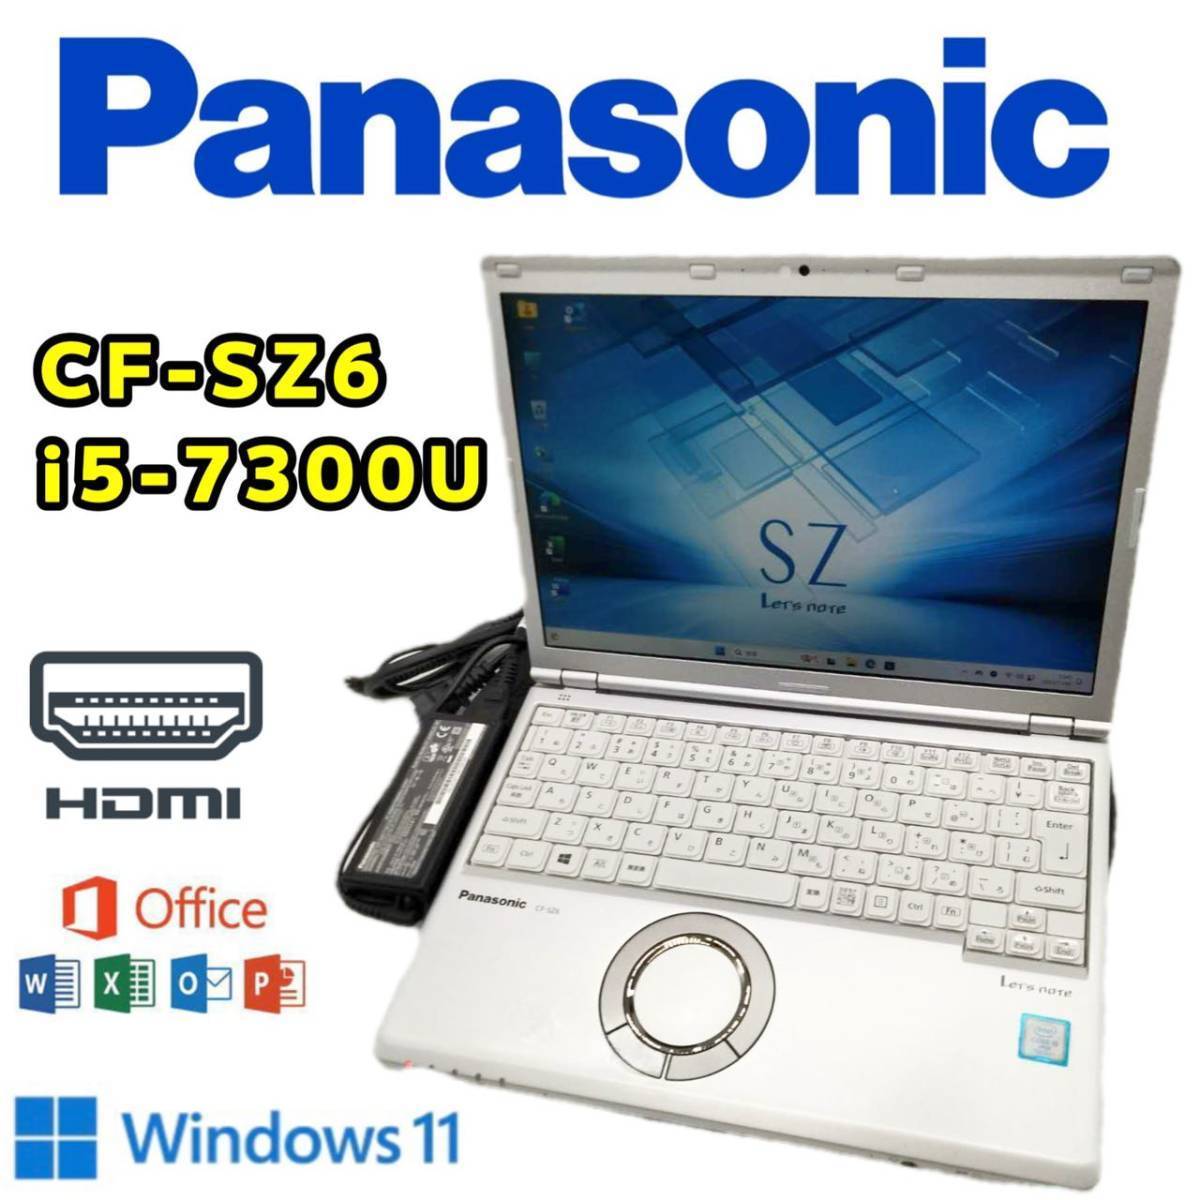 【特価処分】Panasonic レッツノート Let's note CF-SZ6 CPU Core i5-7300U RAM8GB SSD256GB Windows11 Office 中古 PC ノートパソコン